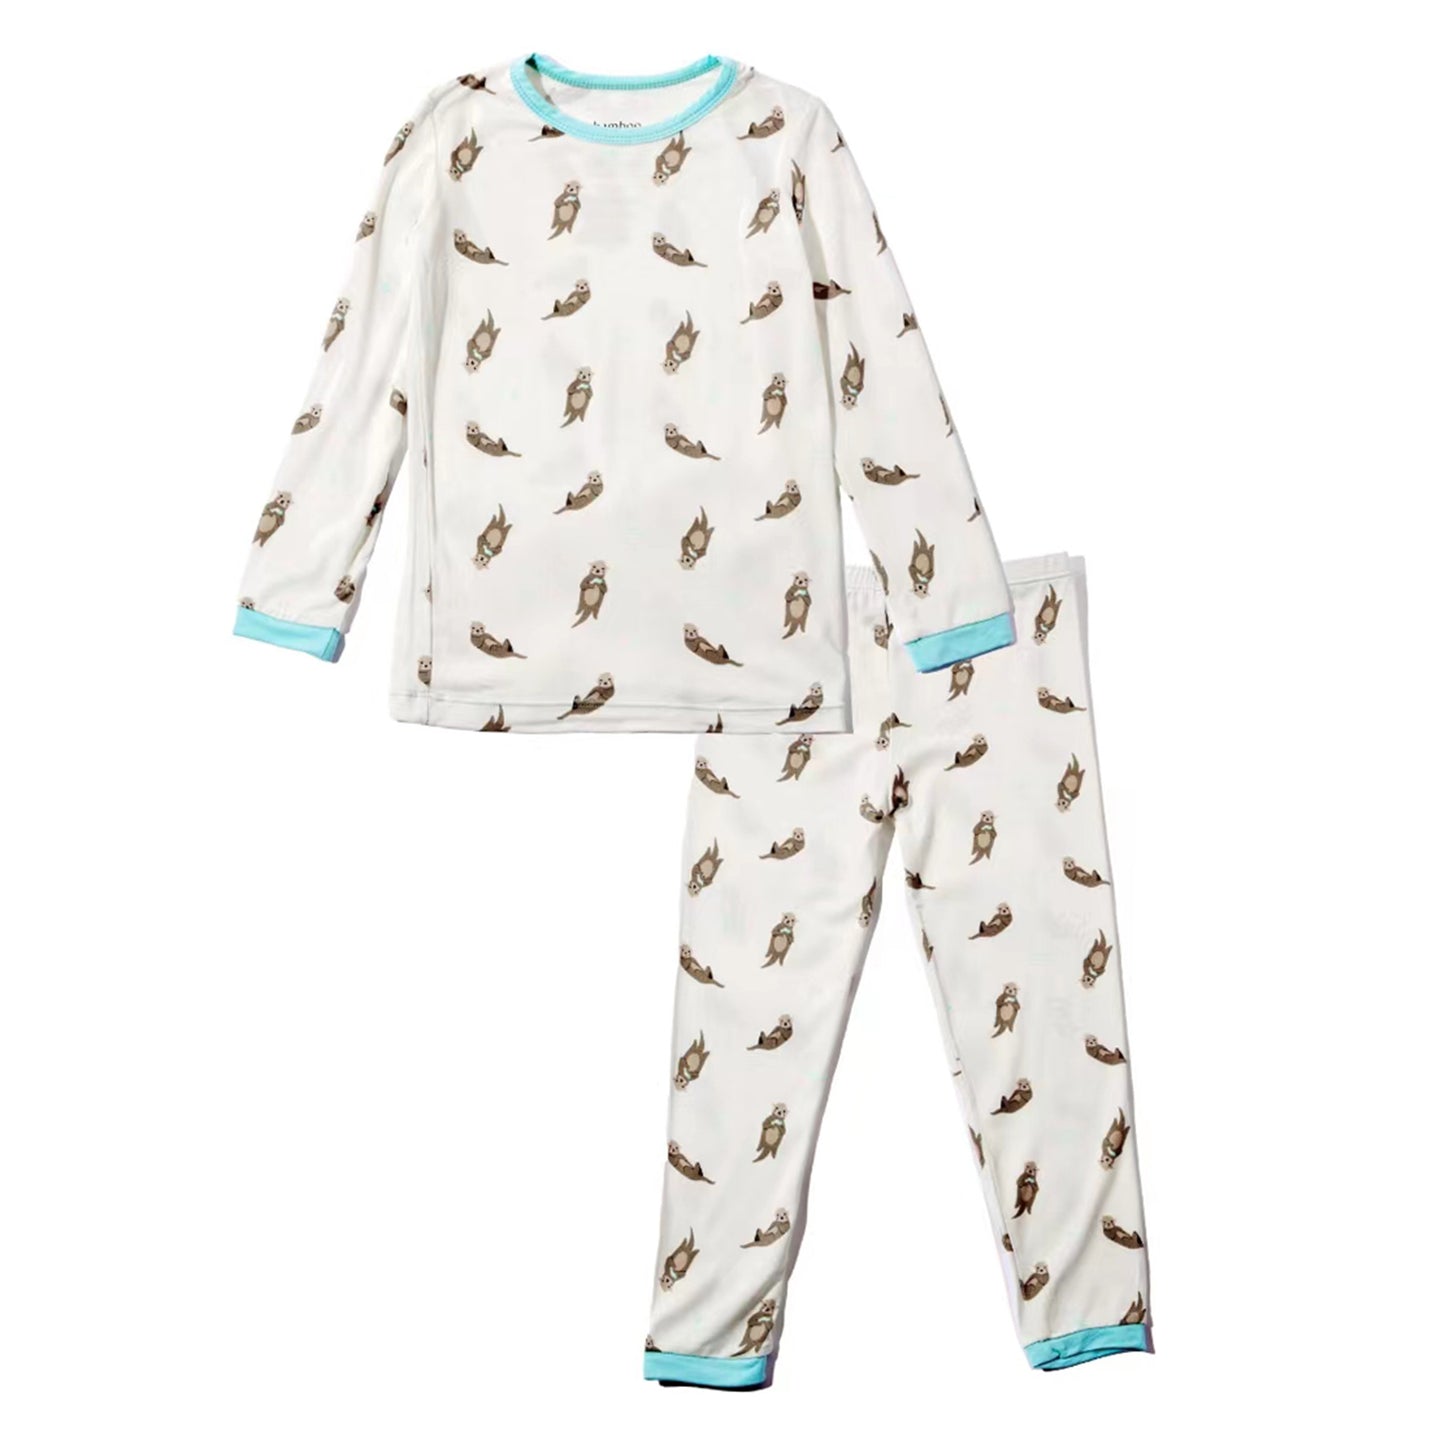 Otter Pajama Set